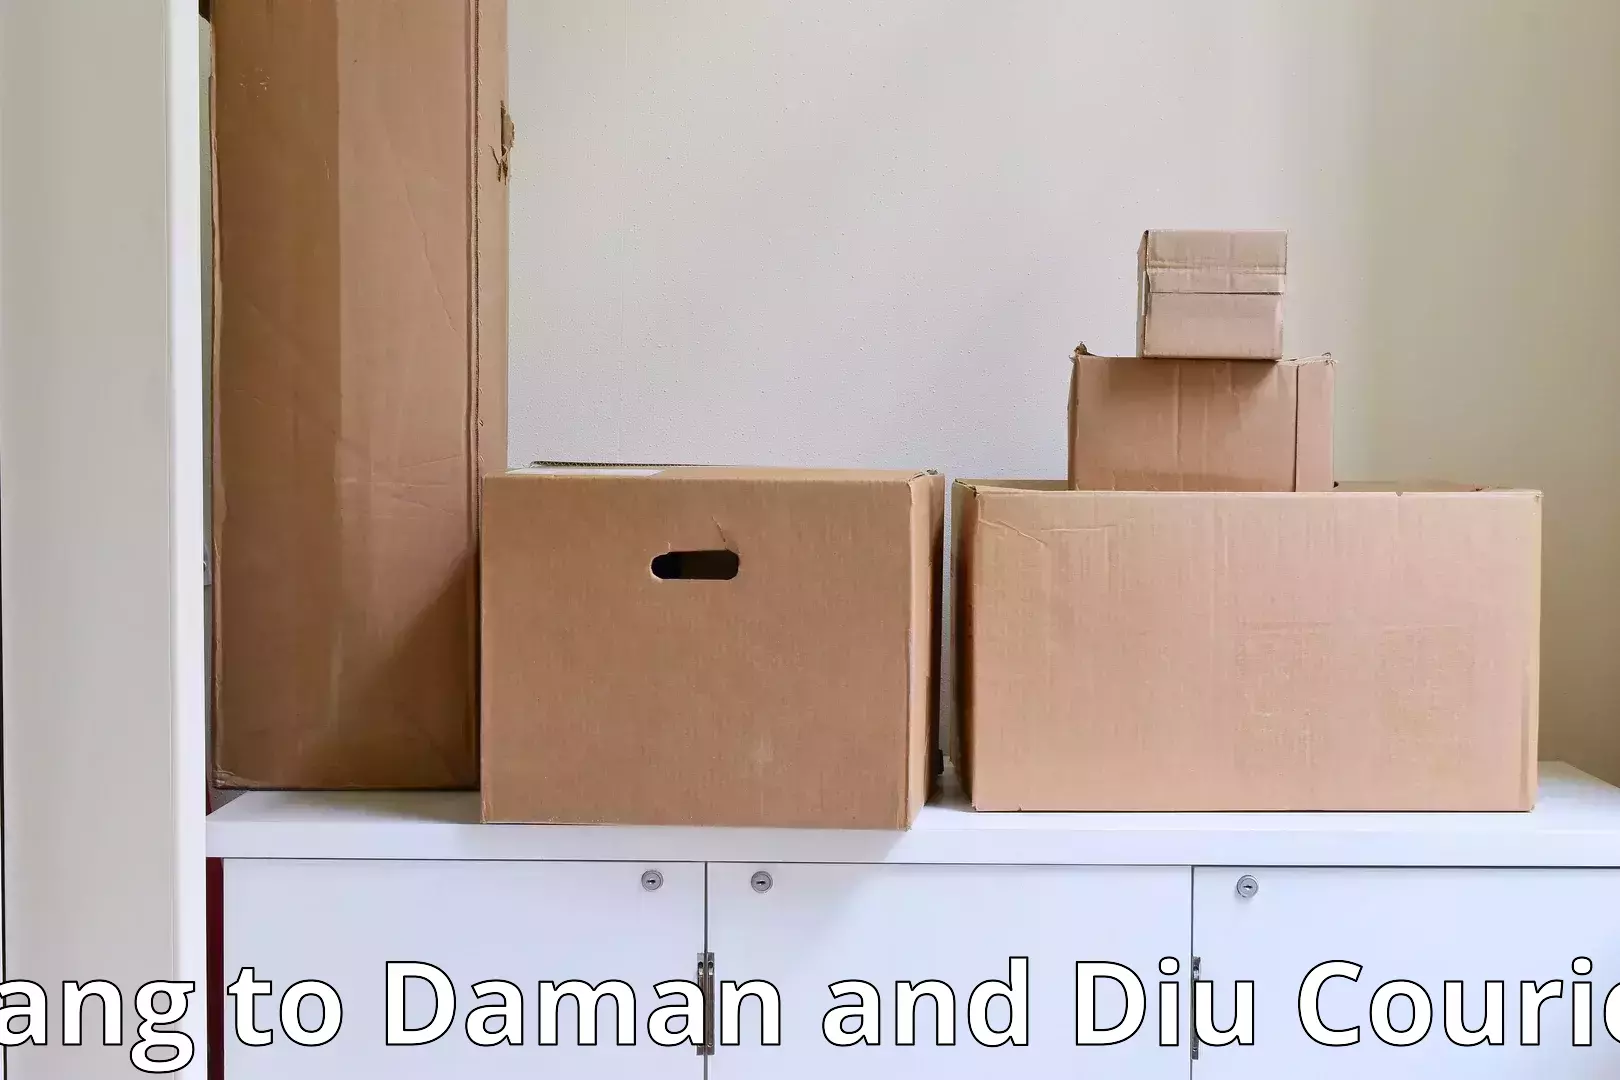 Residential furniture transport Dang to Daman and Diu